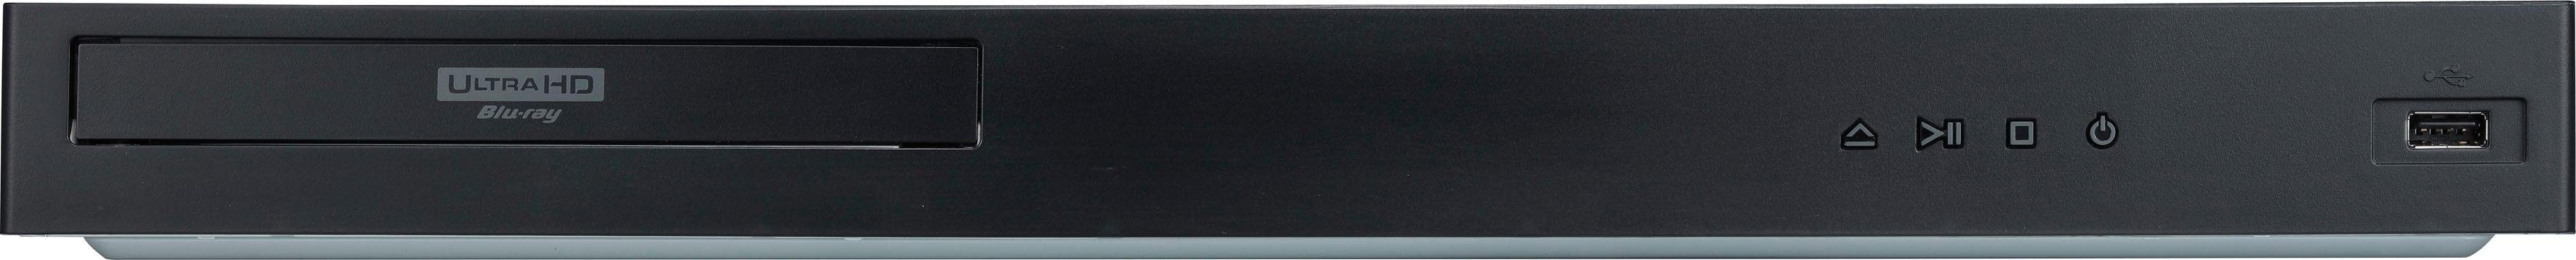 LG UBK90 Blu-ray-Player (4k Ultra Upscaling) HD, WLAN, 4K